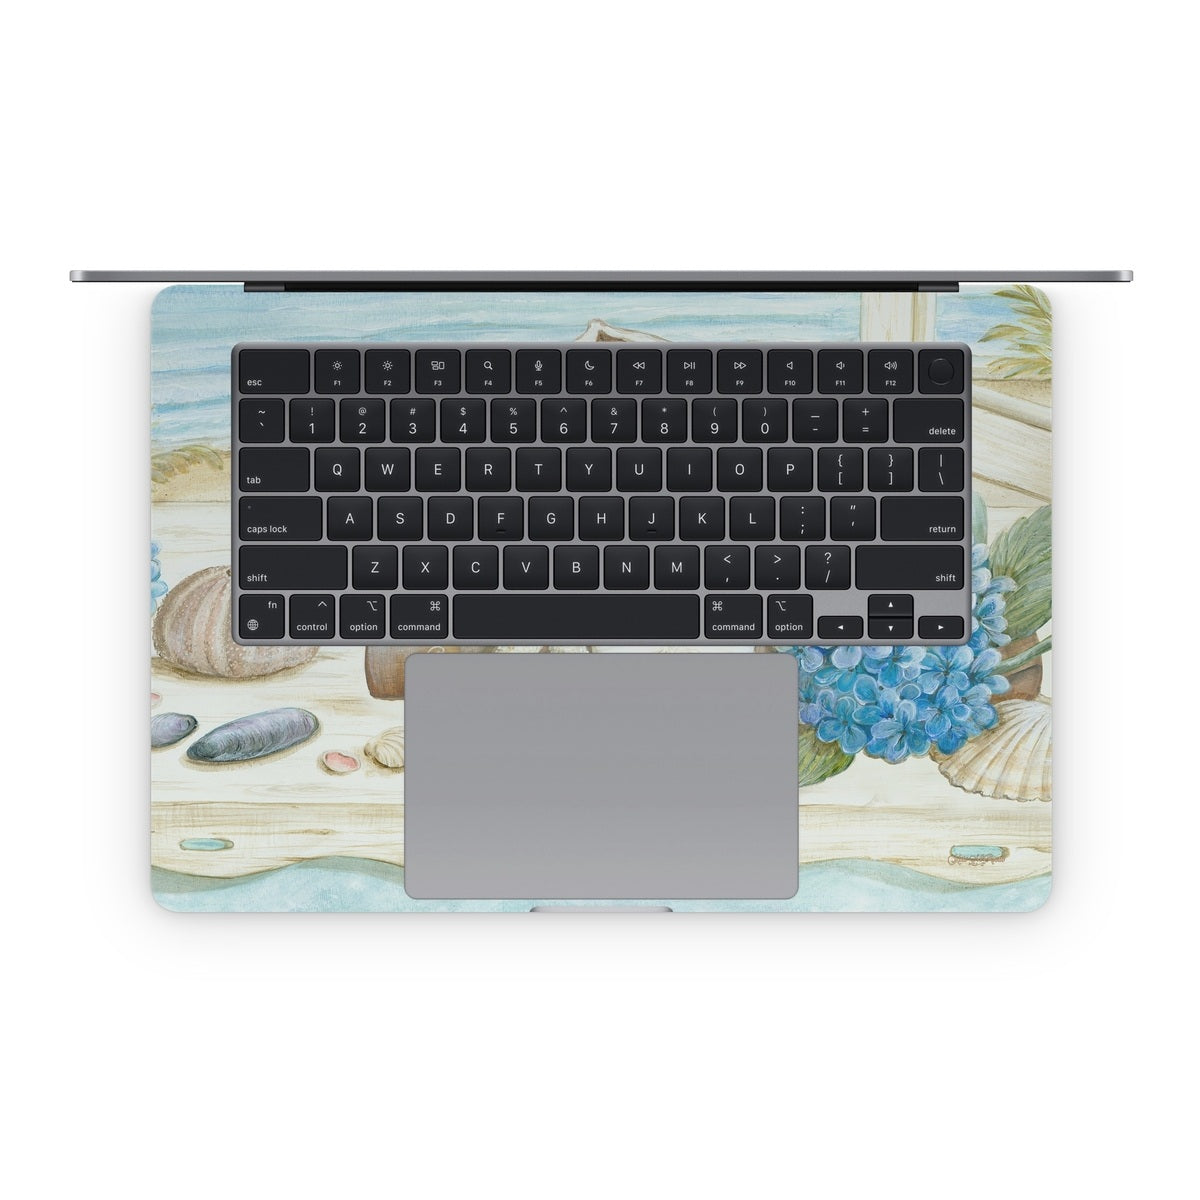 Stories of the Sea - Apple MacBook Skin